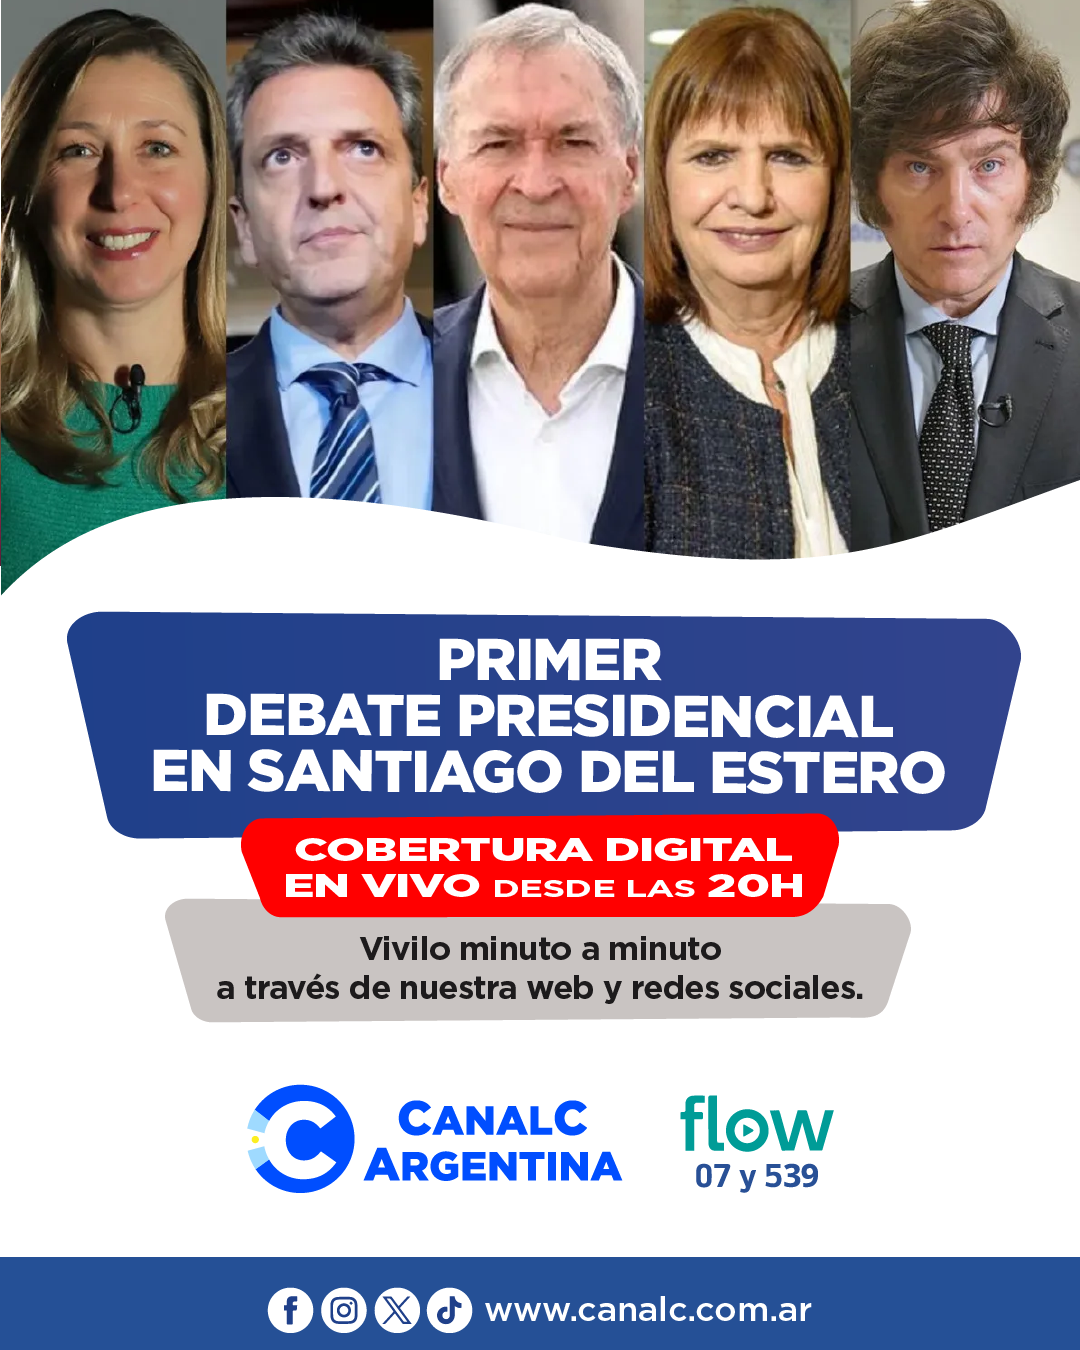 Viví a través de la web y las redes de Canal C Argentina el primer debate presidencial • Canal C